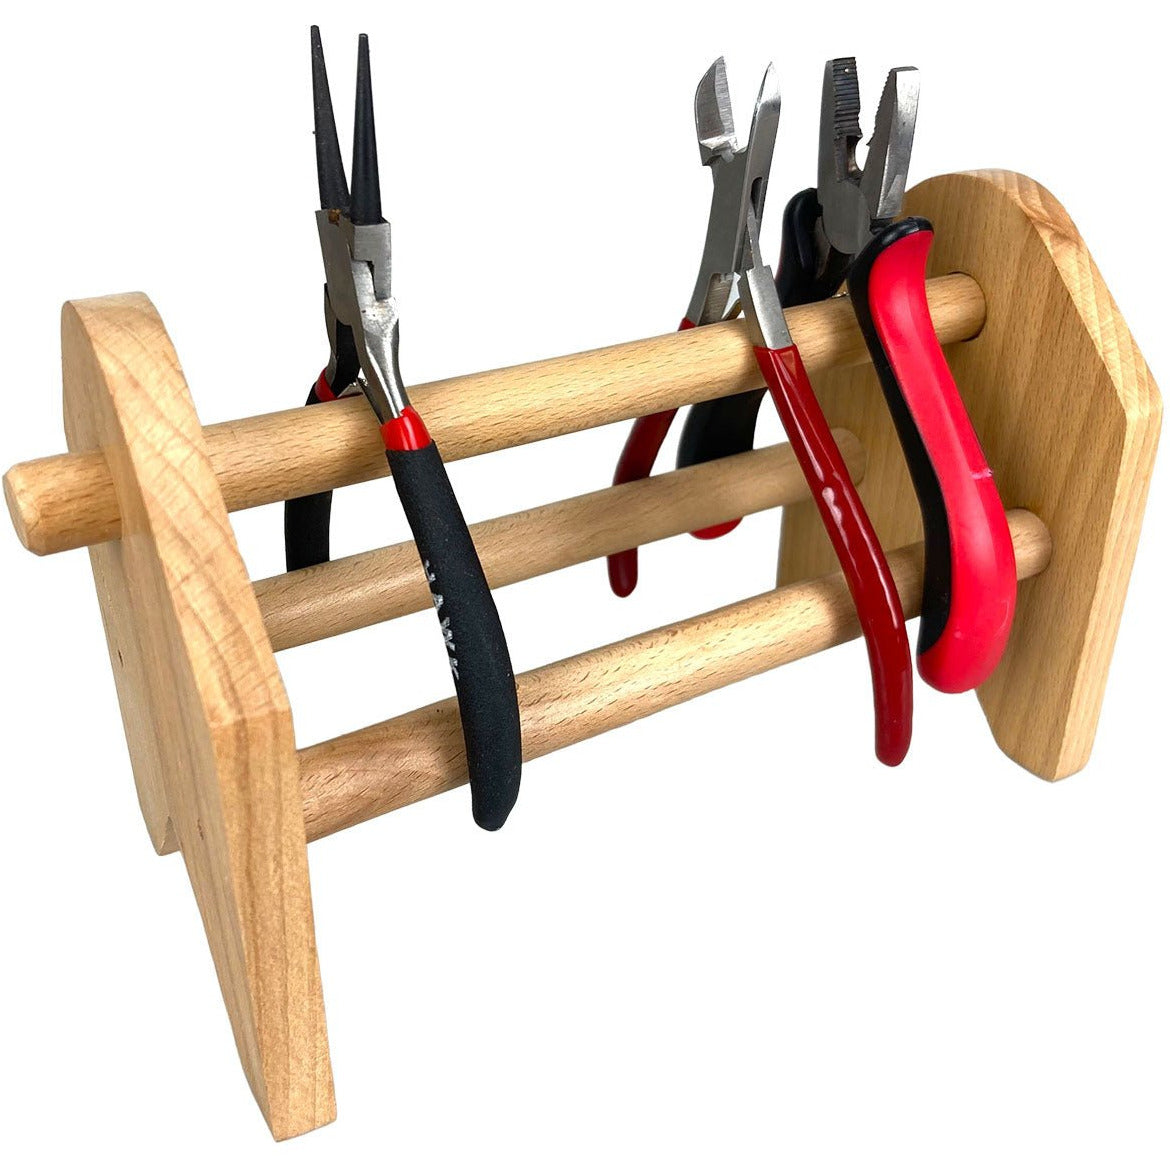 Wooden Pliers Organizer - TJ-11585 - ToolUSA